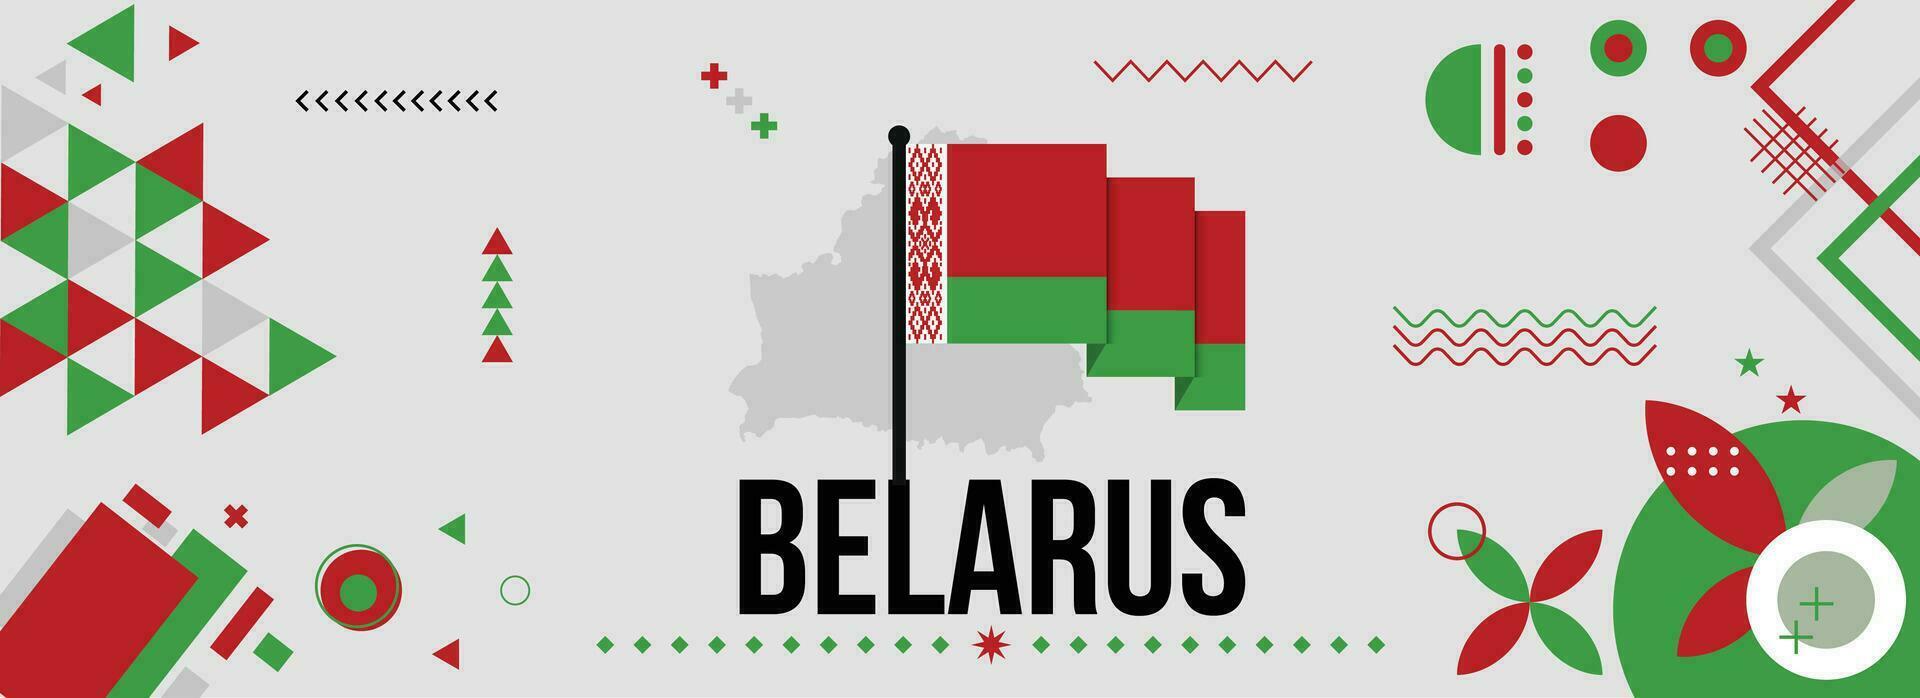 bielorrusia nacional o independencia día bandera para país celebracion. bandera y mapa de bielorrusia con elevado puños moderno retro diseño con tiporgafia resumen geométrico iconos vector ilustración.